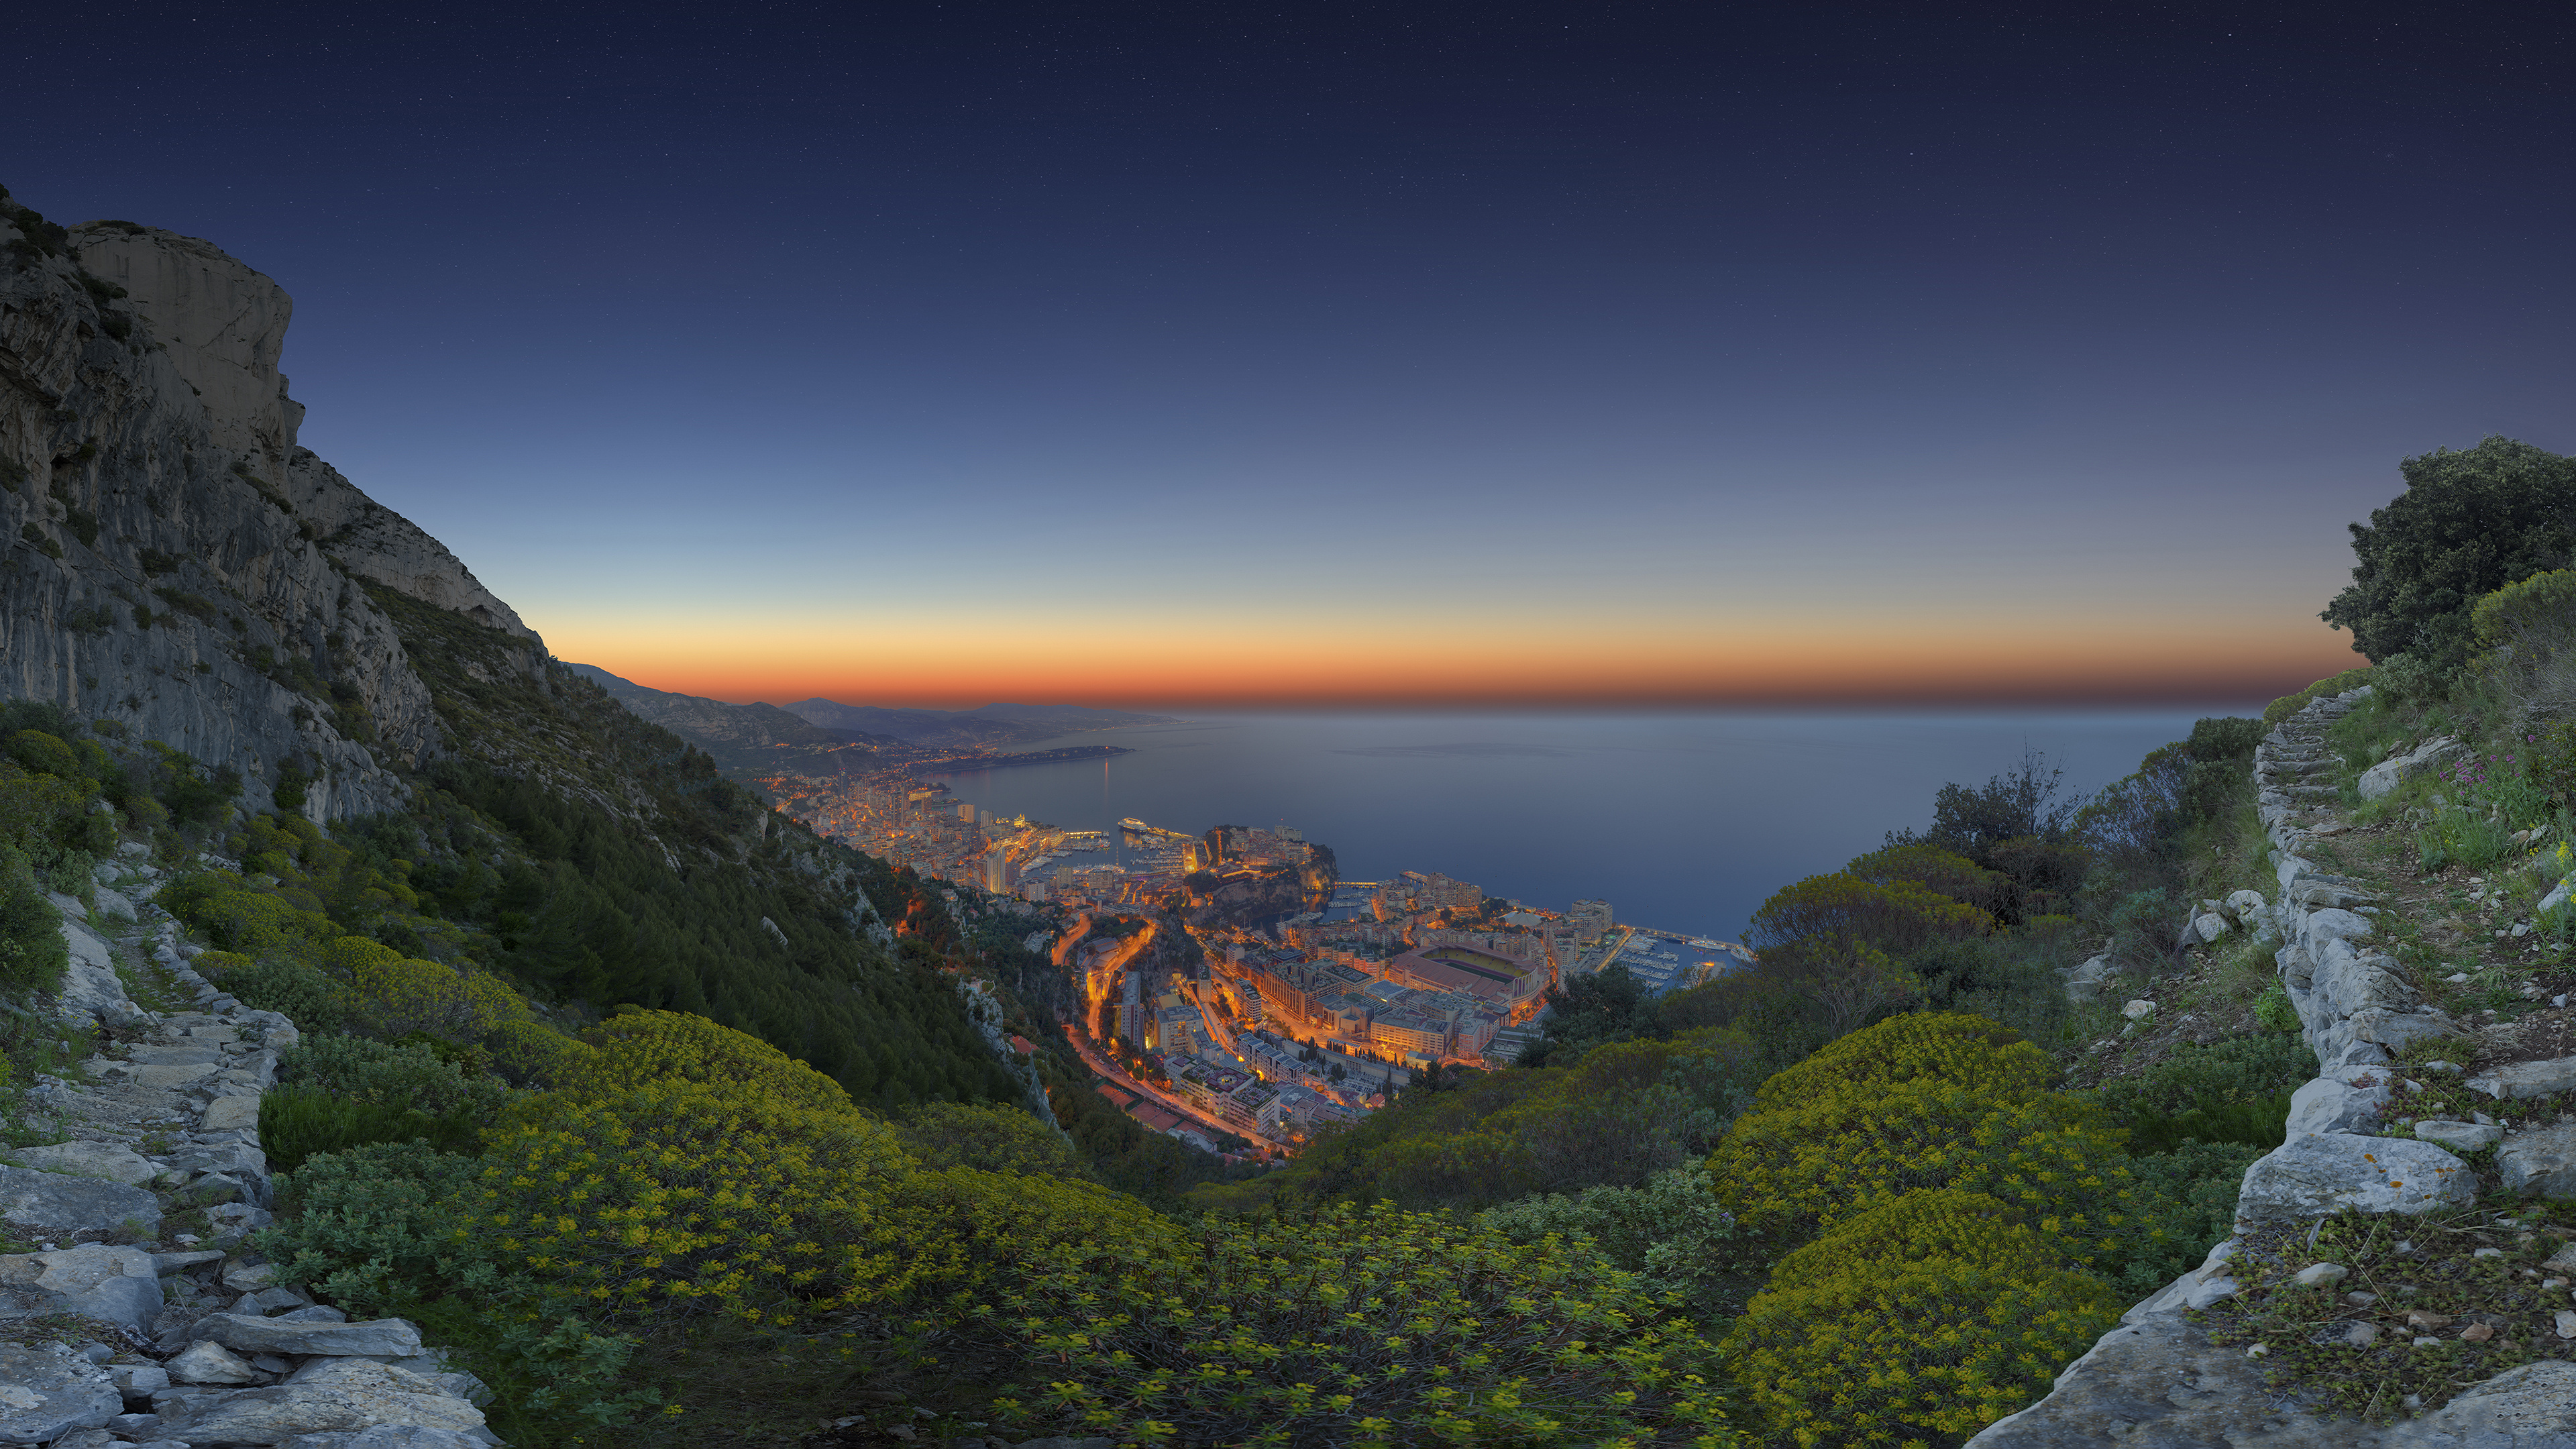 Monaco 4K Ultra HD wallpaper, Background image, Monaco travels, 3840x2160 4K Desktop